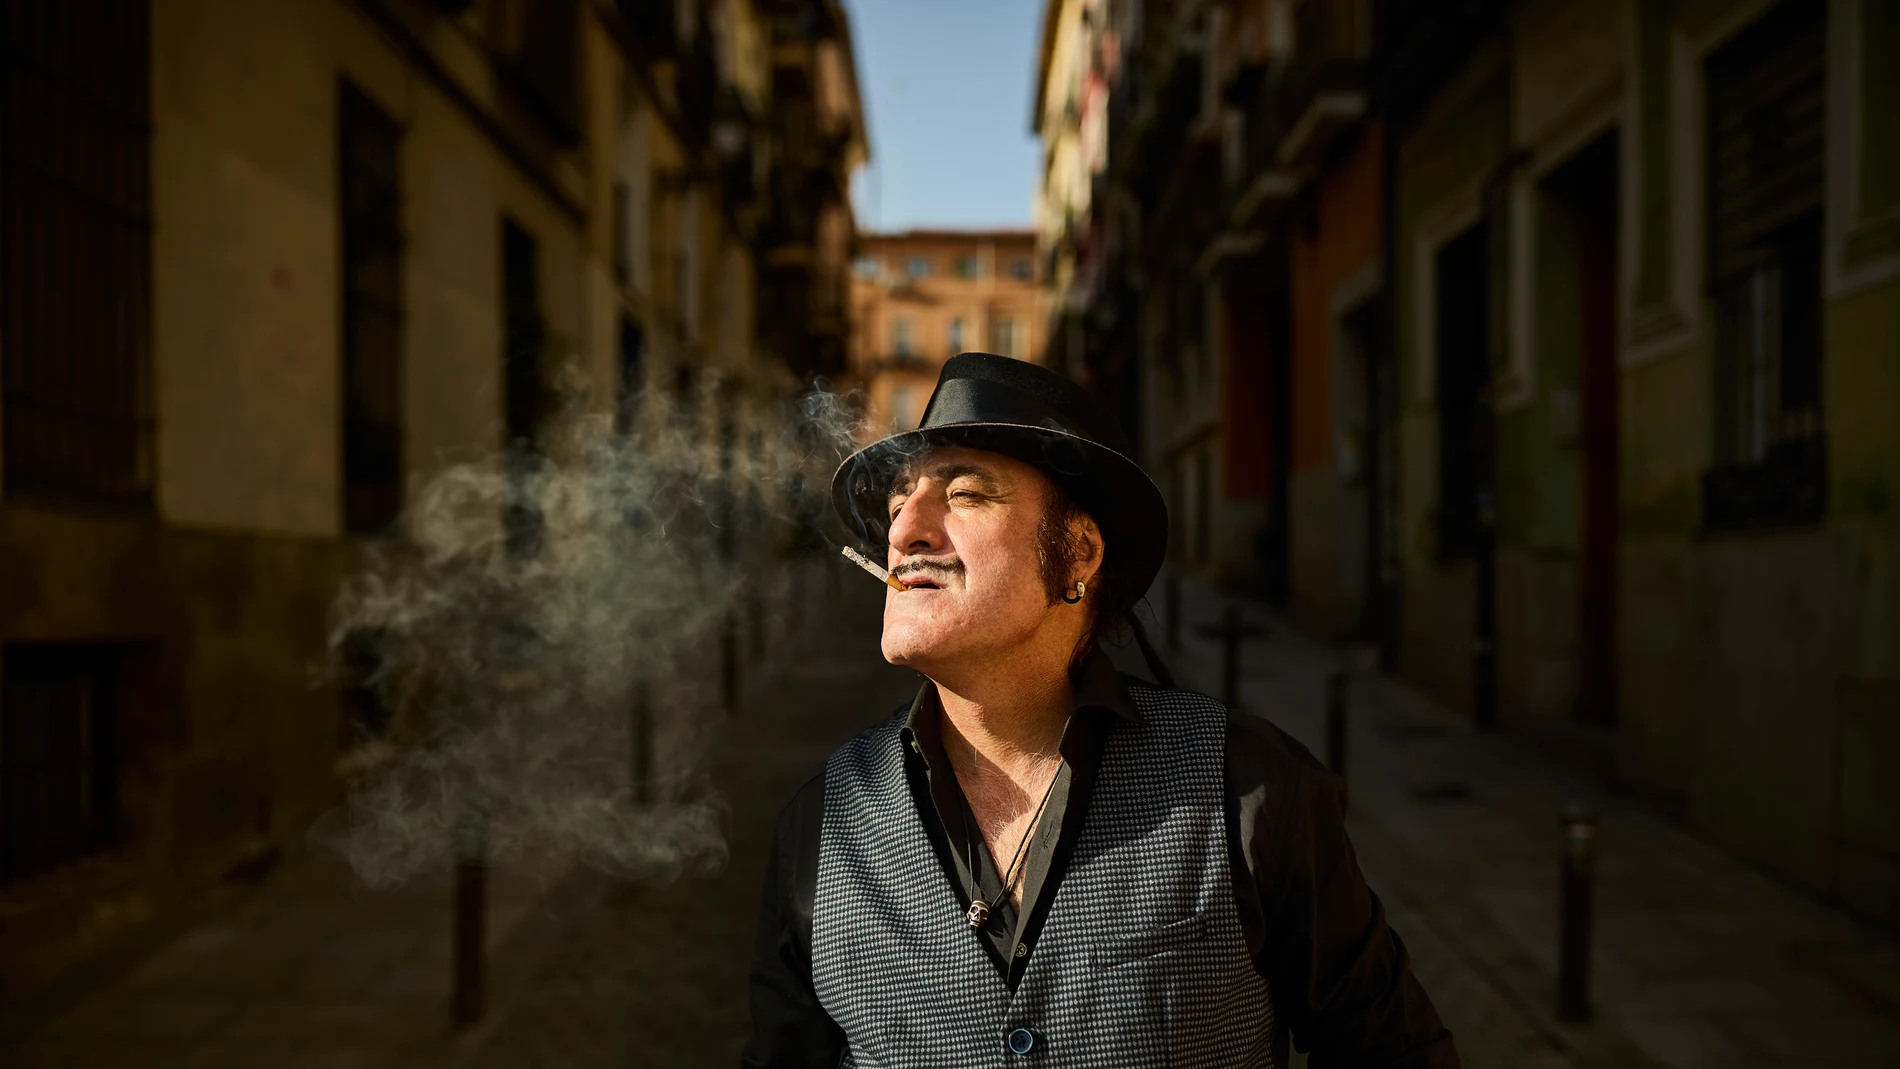 Entrevista con el cantautor Antonio de la Cuesta, más conocido por su nombre artístico Tonino Carotone.